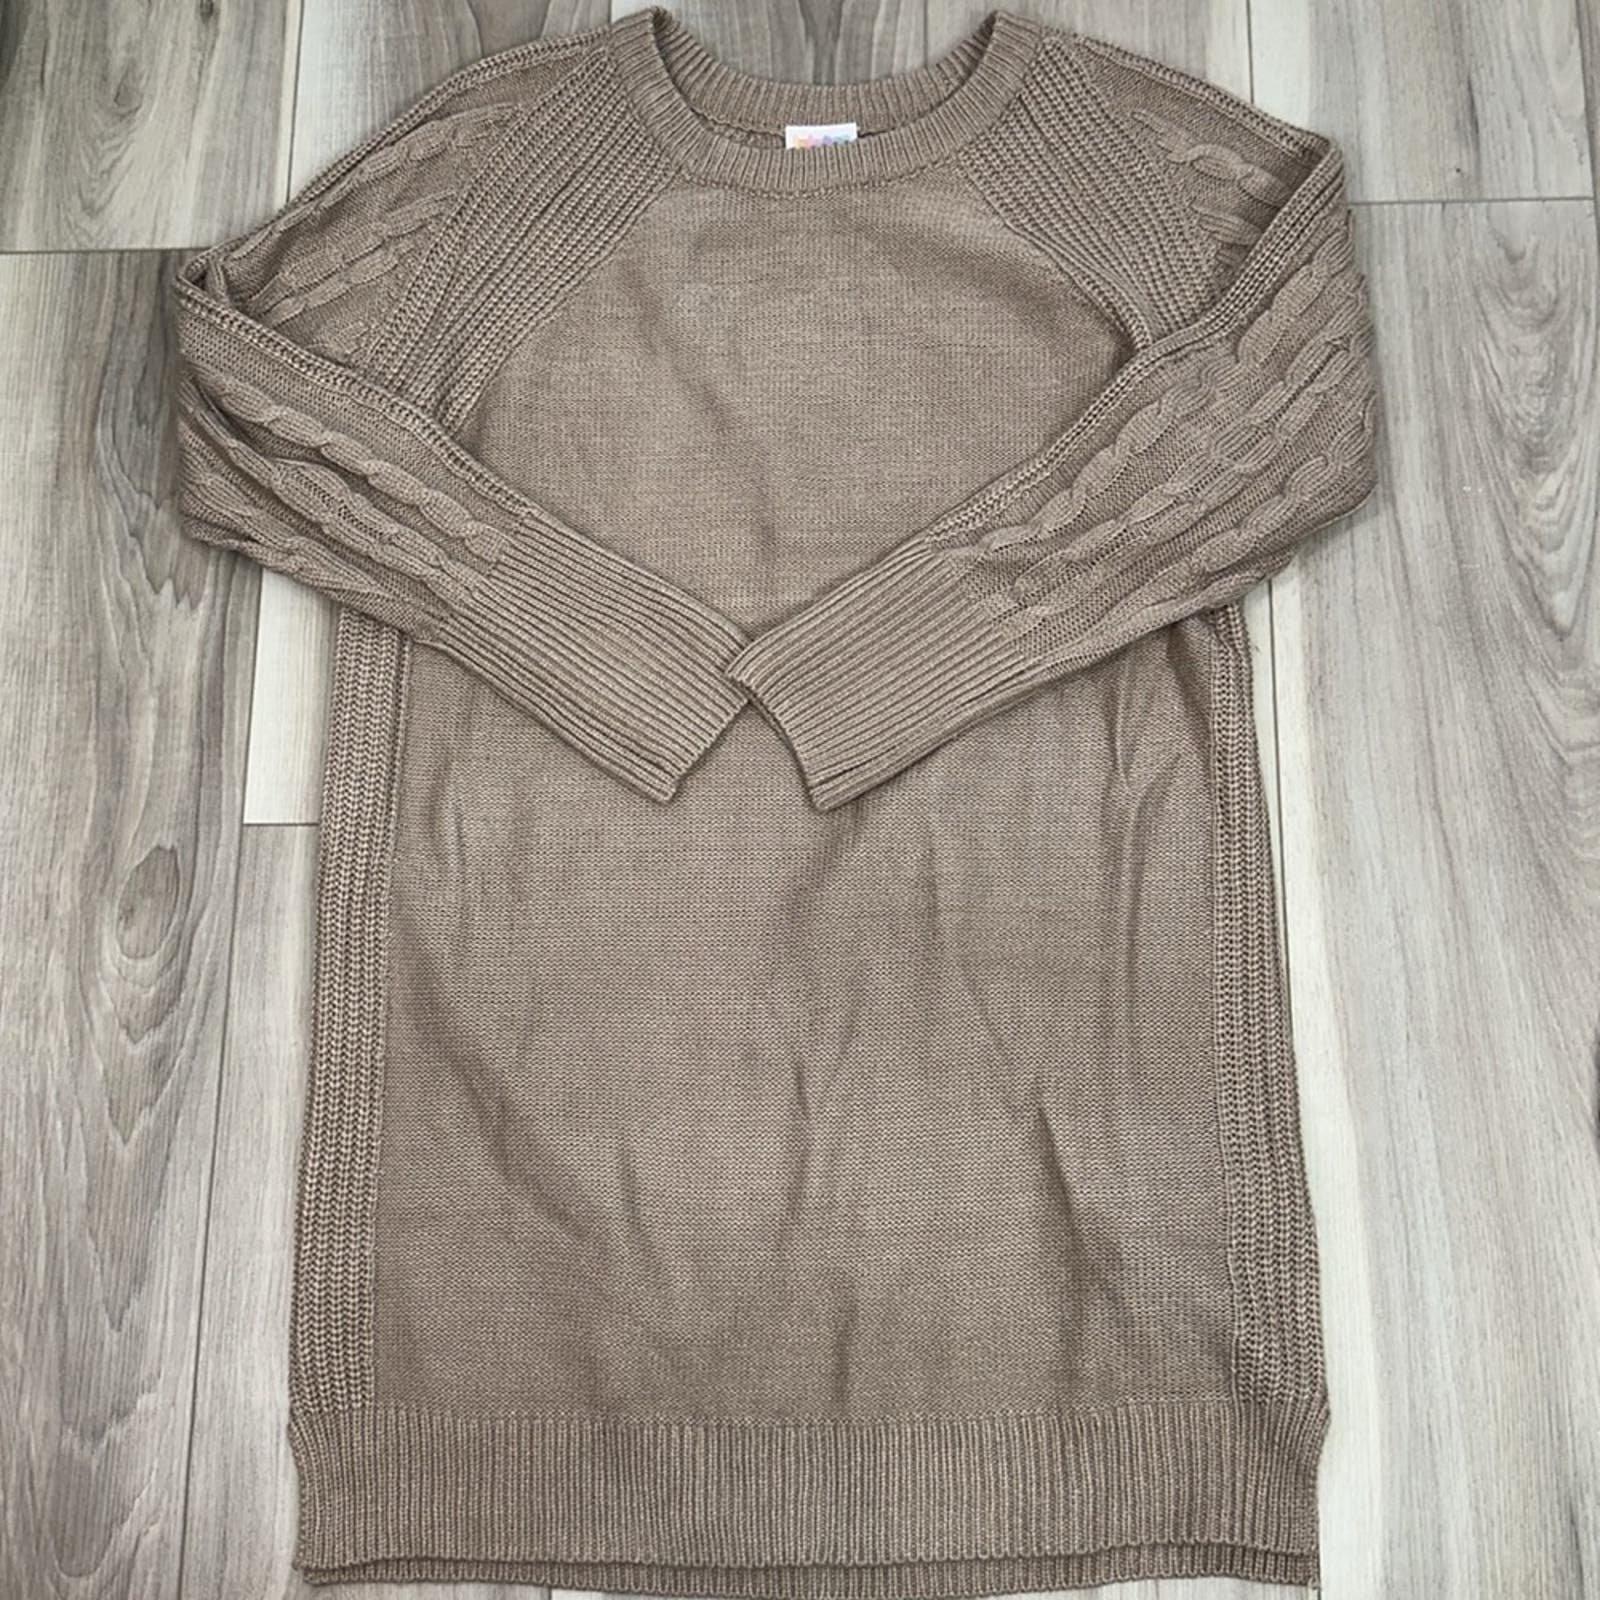 high discount Lularoe Lauren tan sweater dress size small g08JjRAdz outlet online shop